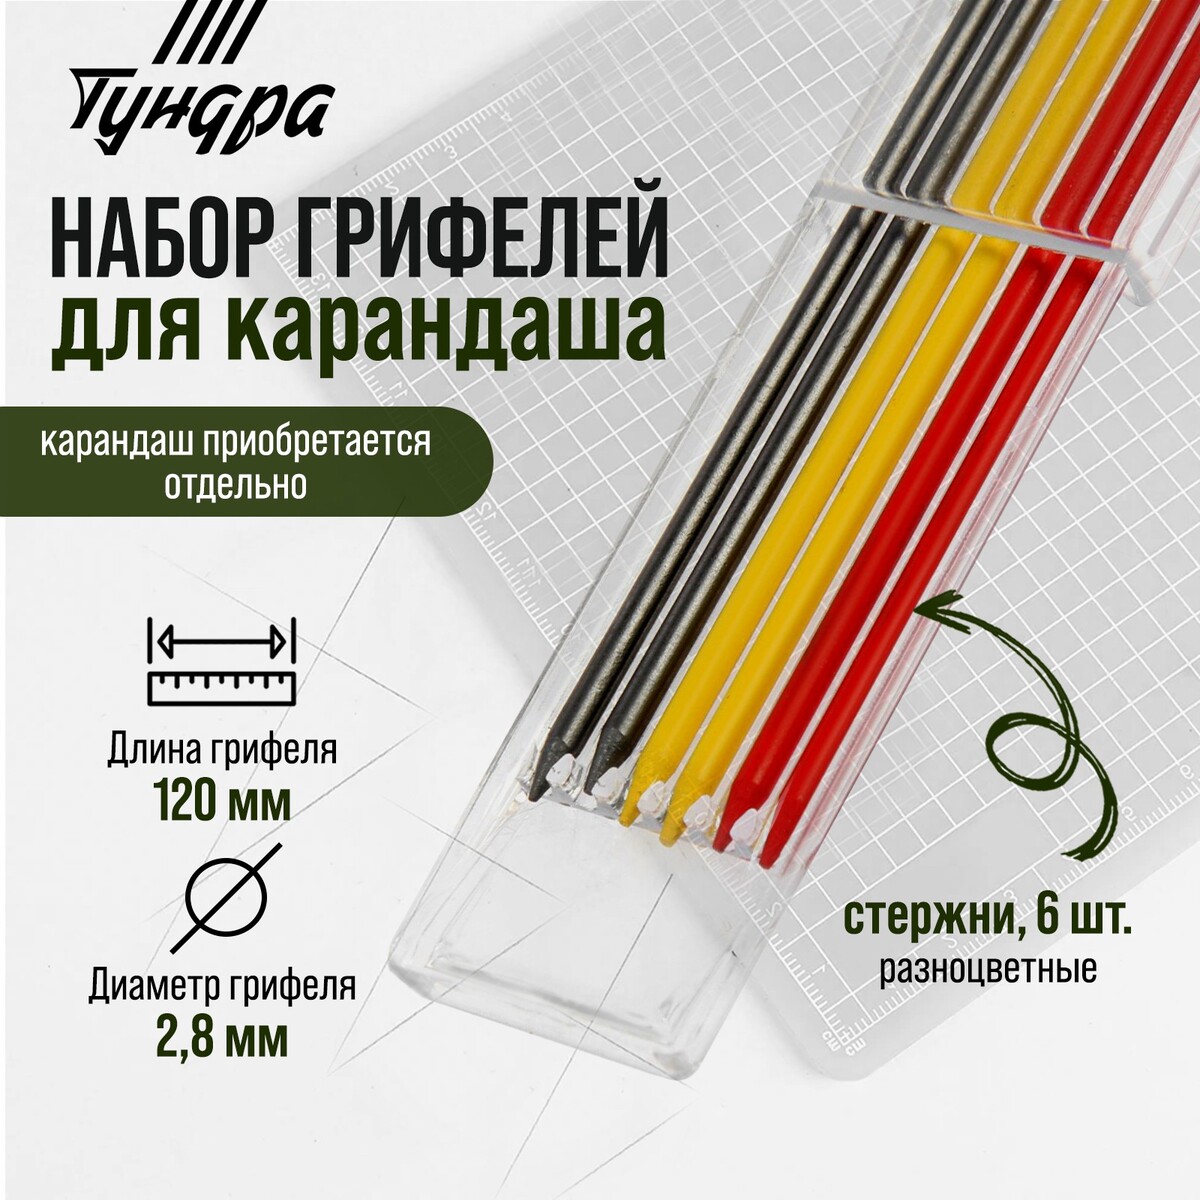 Набор грифелей для карандаша тундра, цветные (черные, красные, желтые), 120 мм, 6 штук авточехлы универсальные 9 предметов черные красные вставки м5 h series